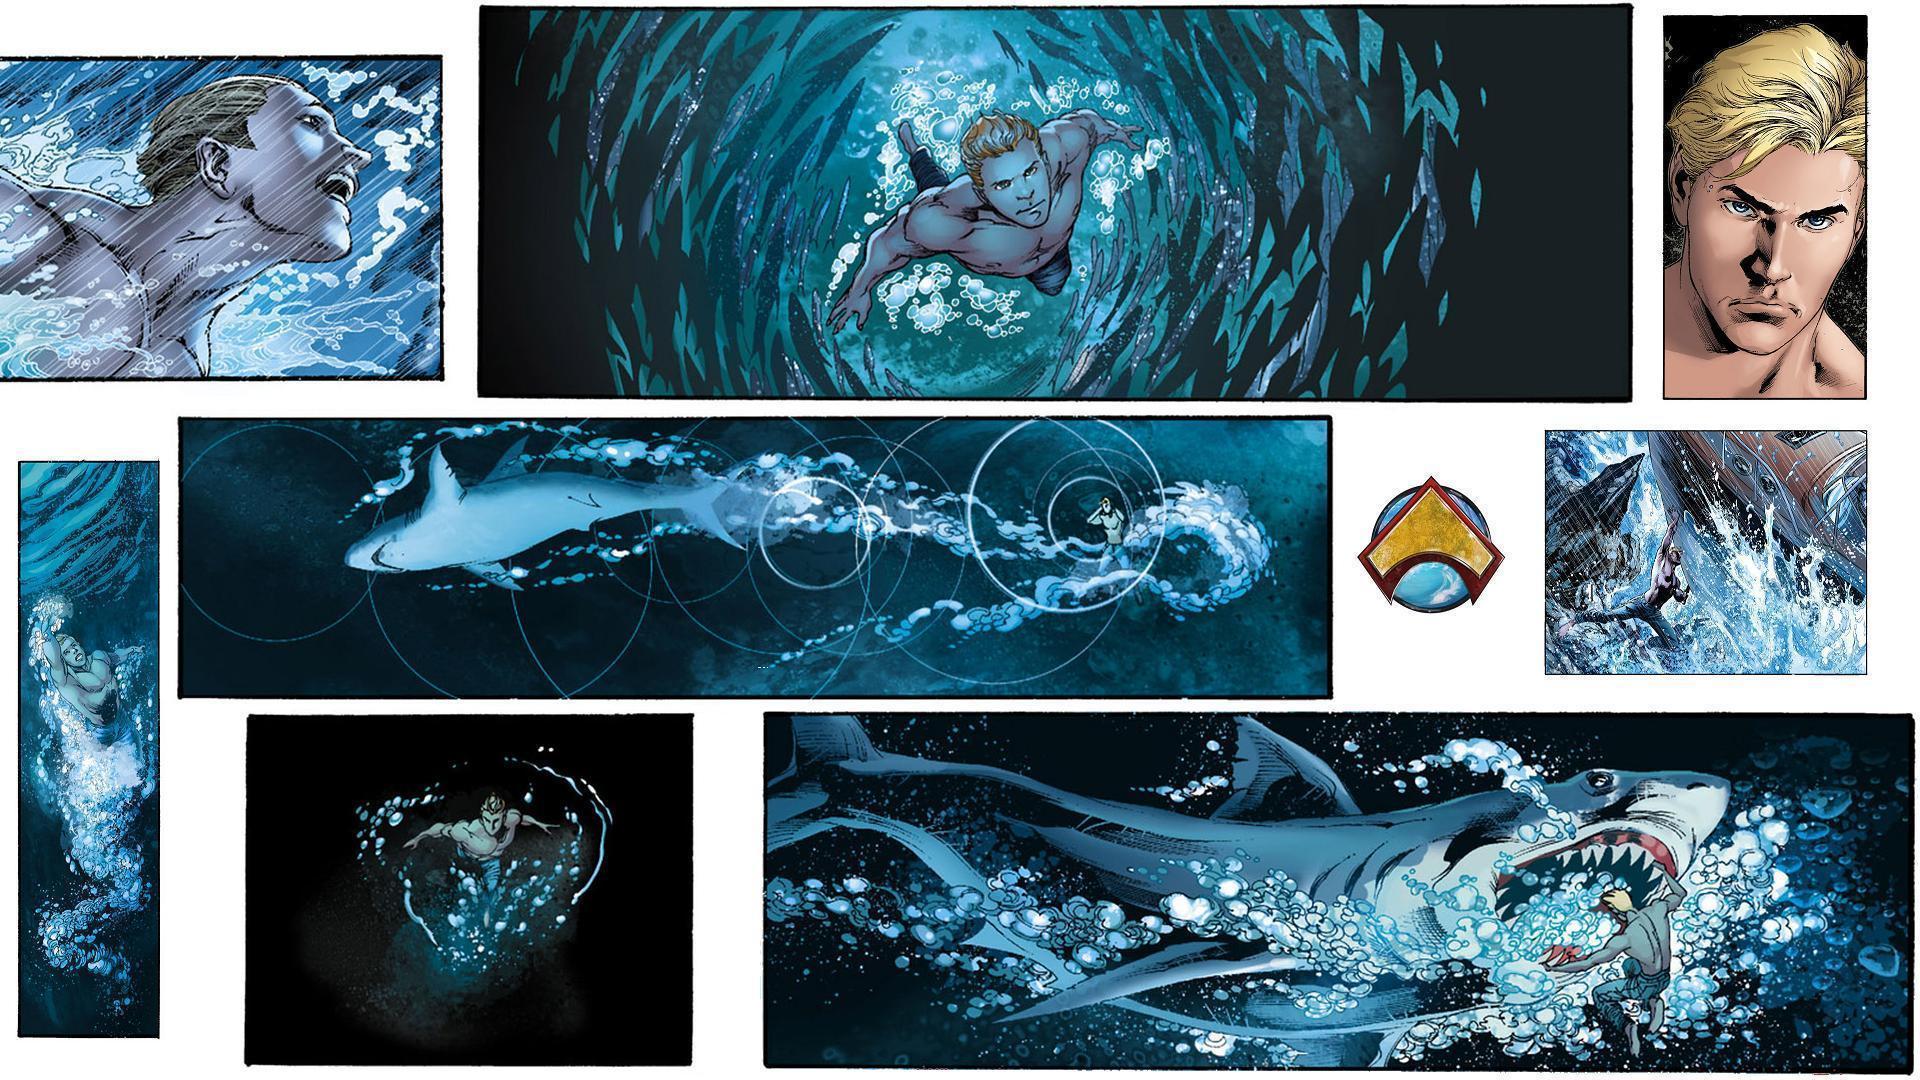 Aquaman Computer Wallpaper, Desktop Background 1920x1080 Id: 315928